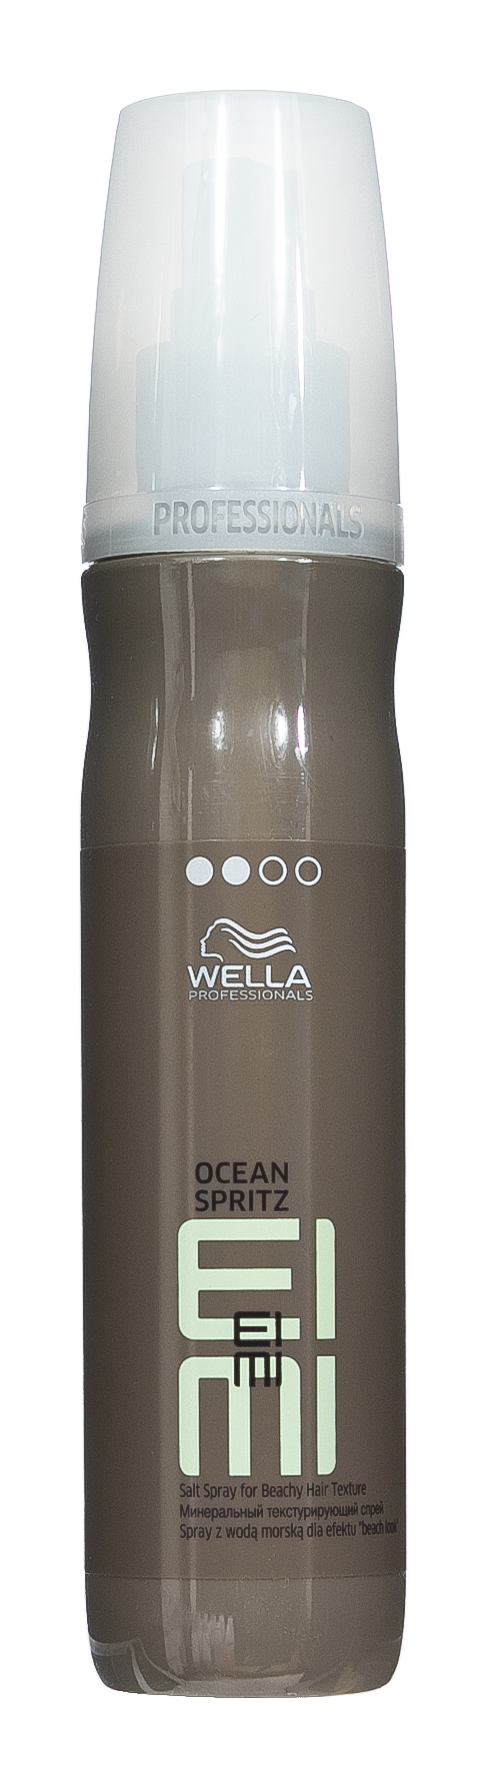 Wella Professionals Минеральный текстурирующий спрей, 150 мл. фото